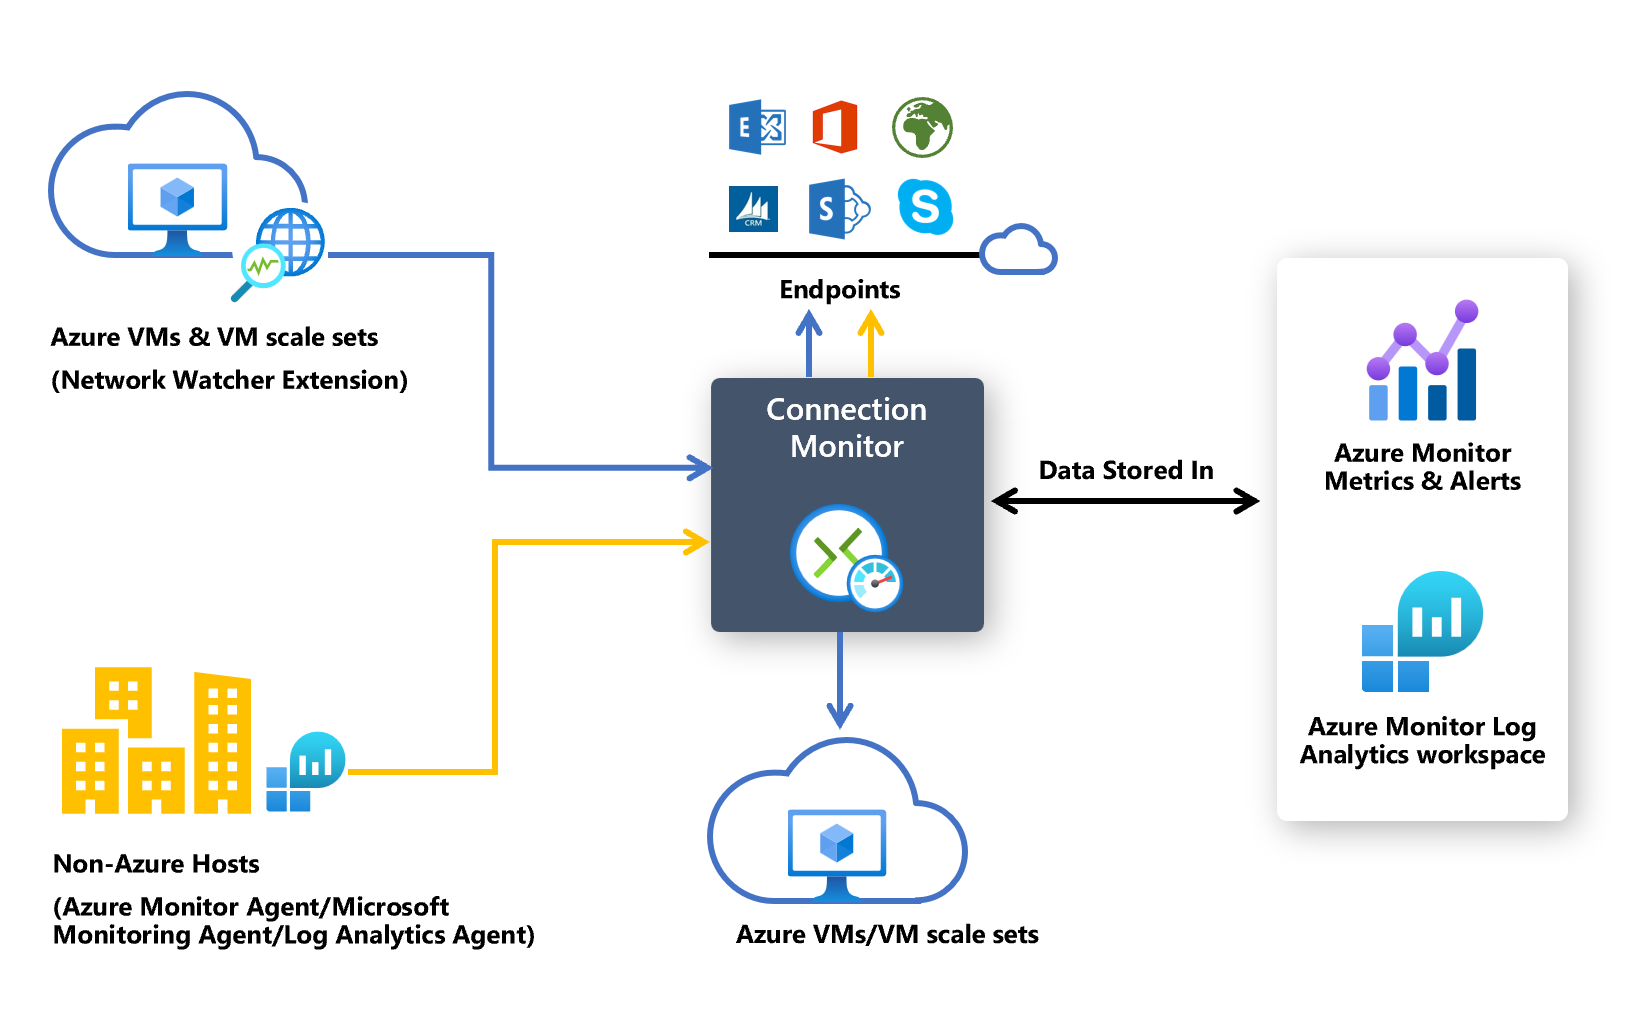 Diagrama que muestra cómo interactúa Connection Monitor con las máquinas virtuales de Azure, los hosts que no son de Azure, los puntos de conexión y las ubicaciones de almacenamiento de datos.